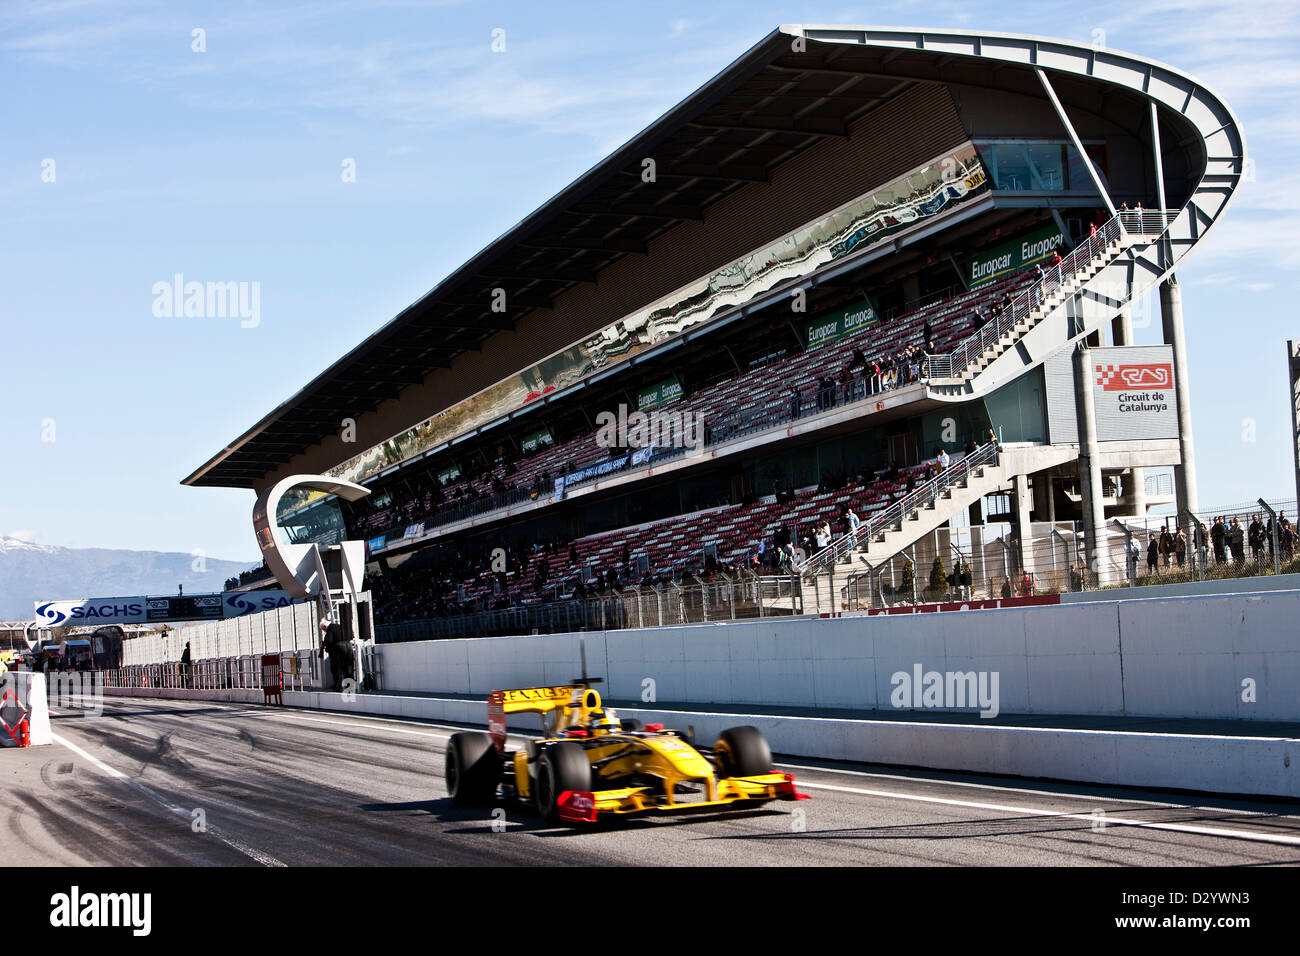 Voiture de course de Formule Un et tribune, Barcelone, 27 02 10 Banque D'Images